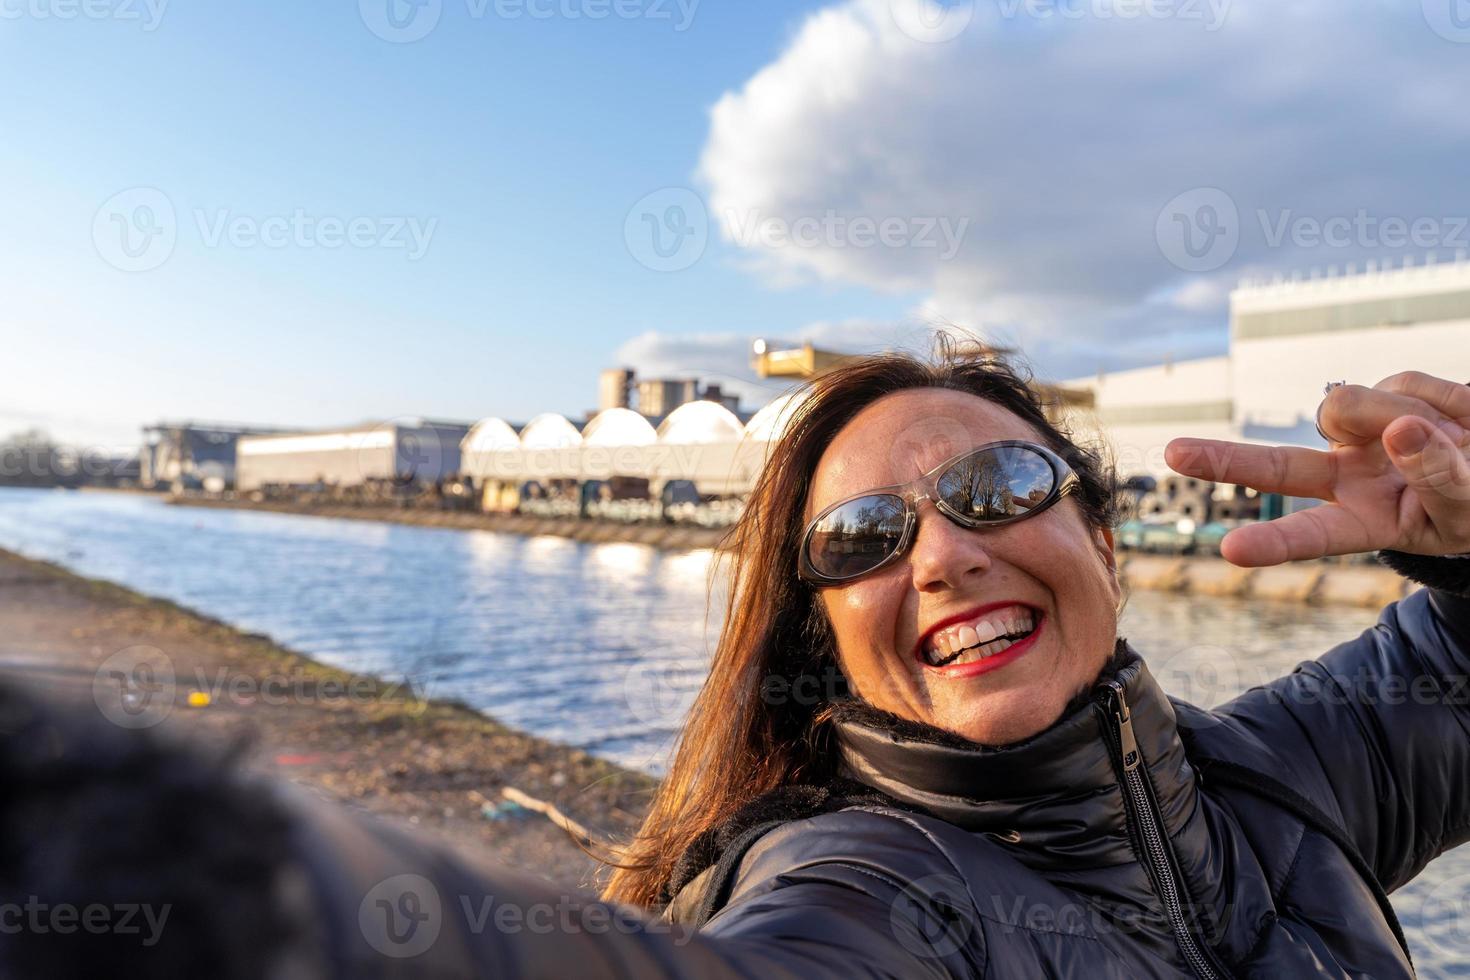 medio Envejecido mujer vistiendo invierno ropa tomando un selfie por un río foto